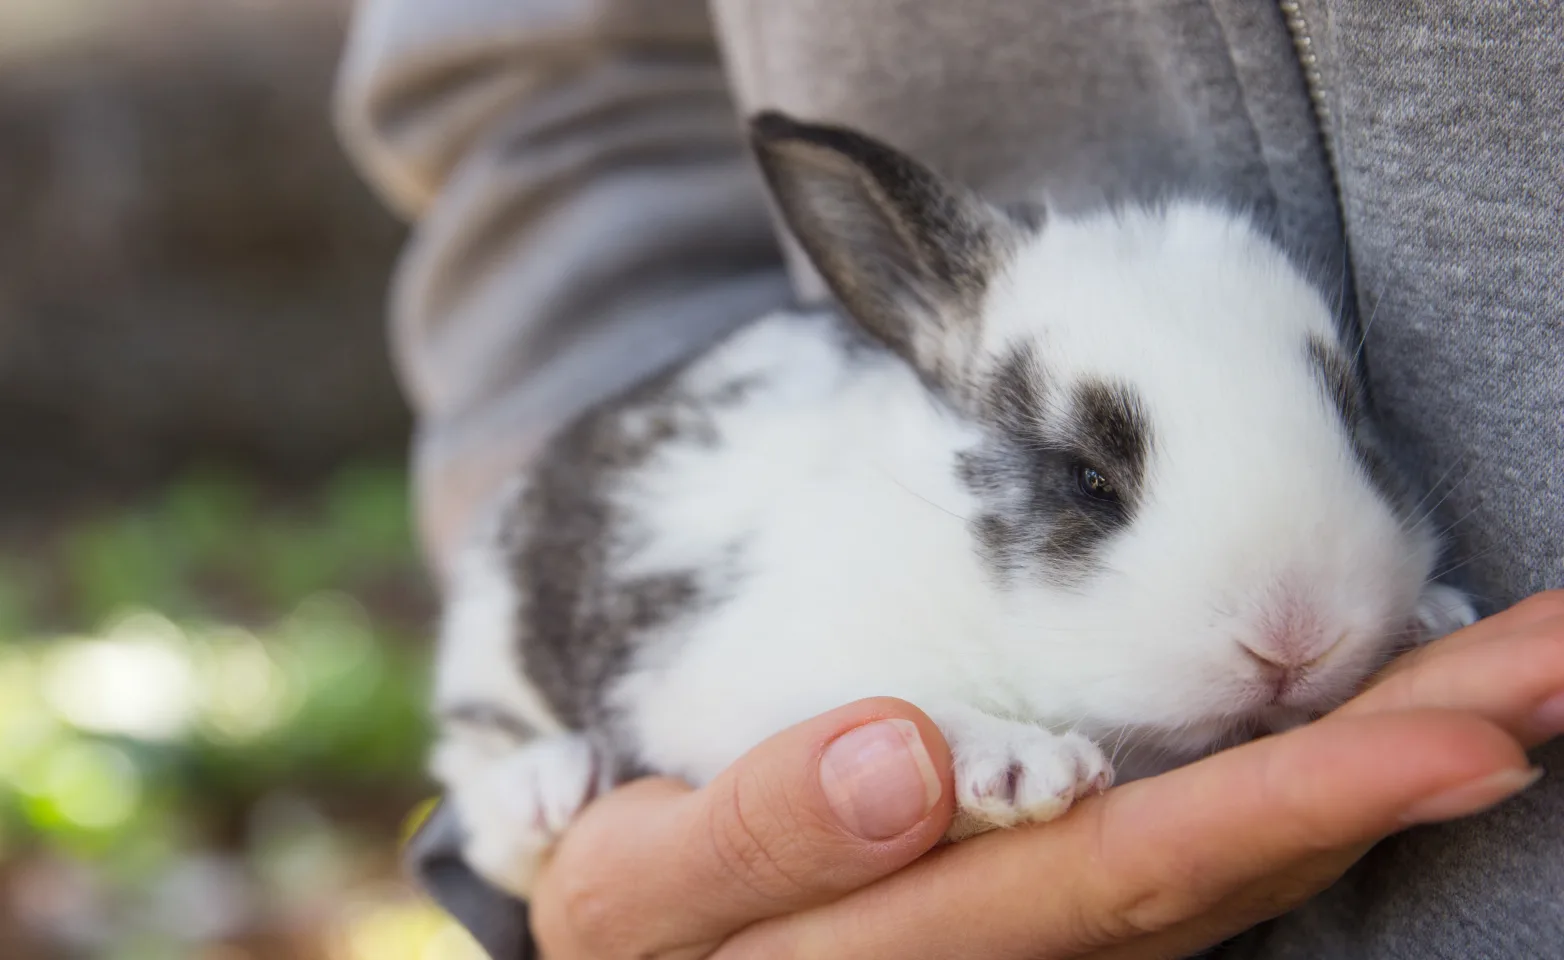 Rabbit being held